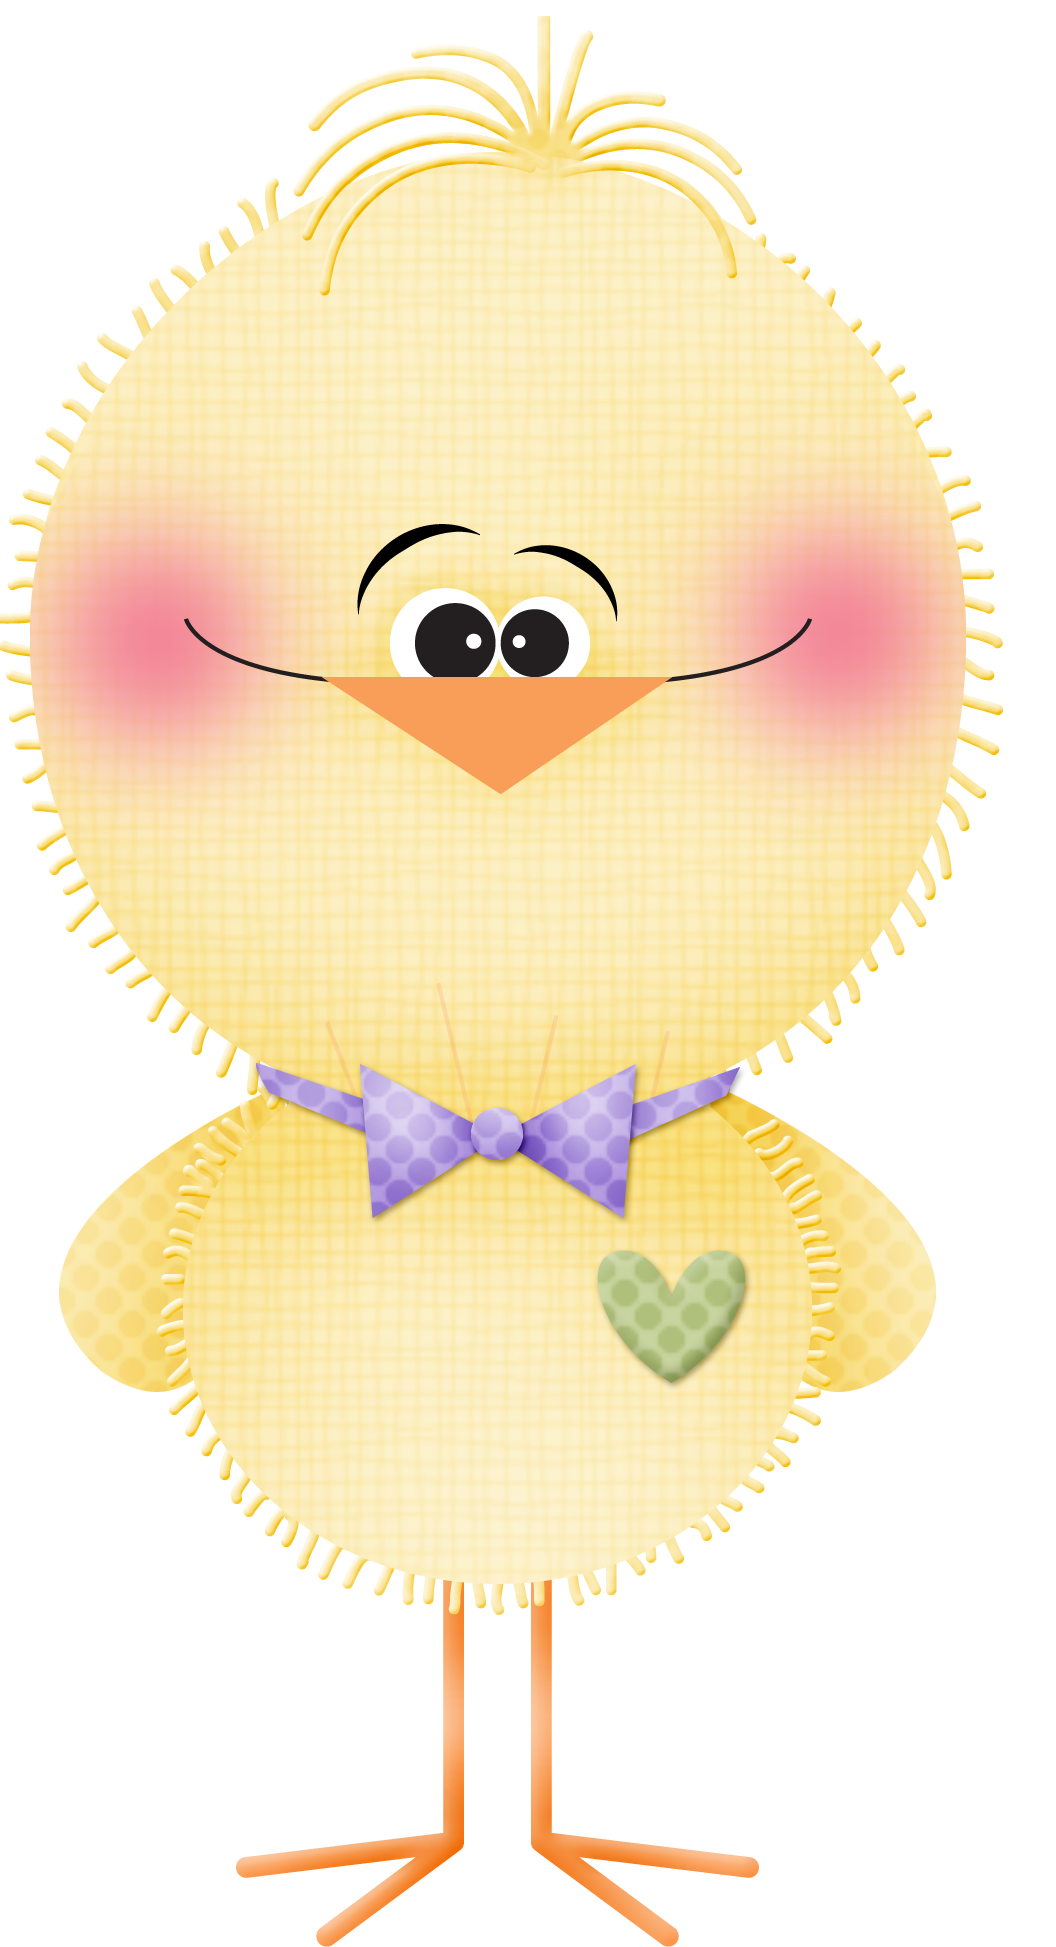 Весёлый цыпленок с галстуком-бабочкой и сердечком